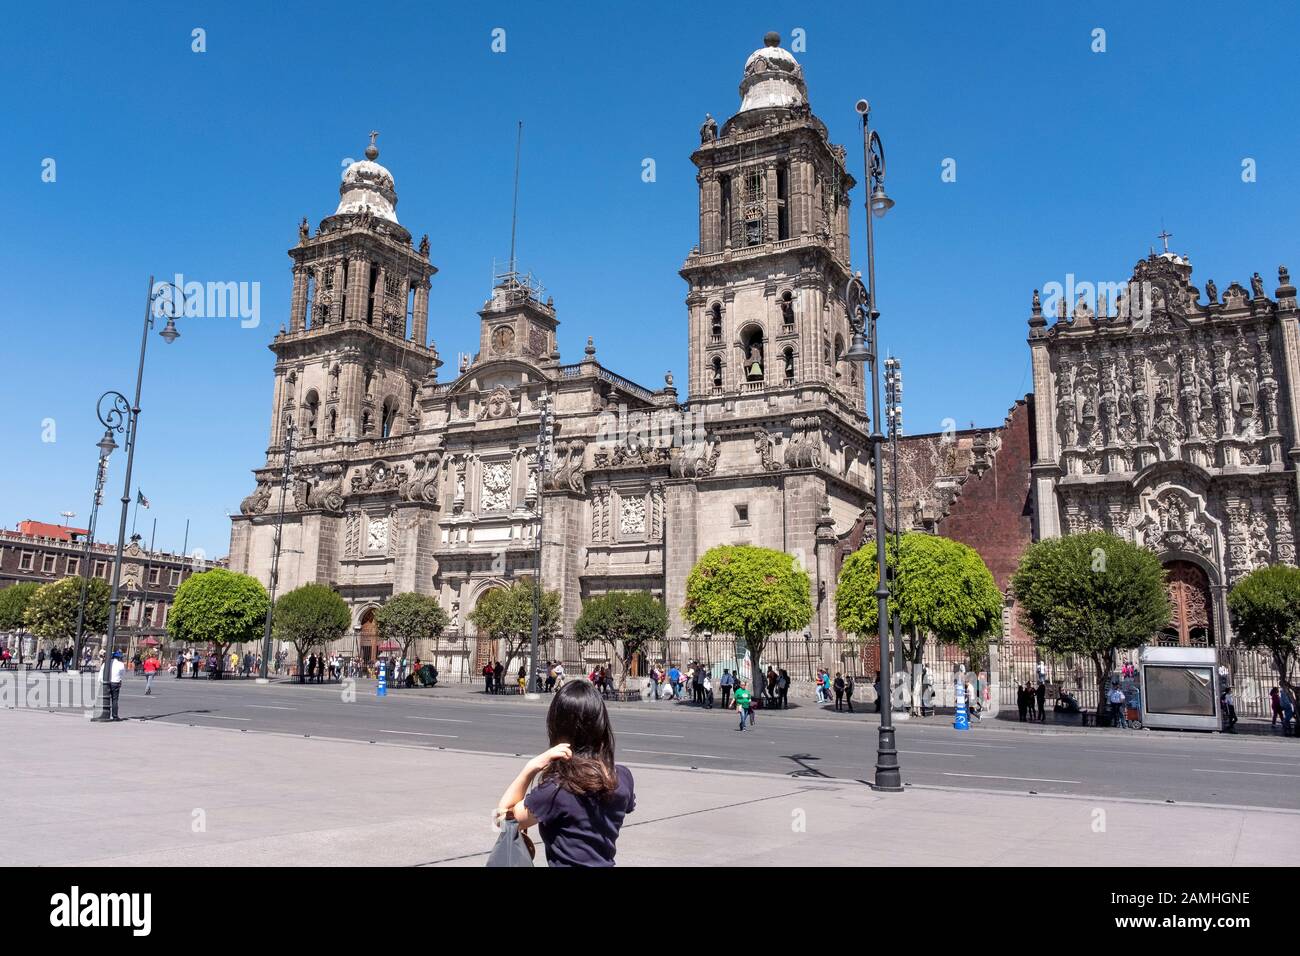 Zócalo, México City. Stock Photo